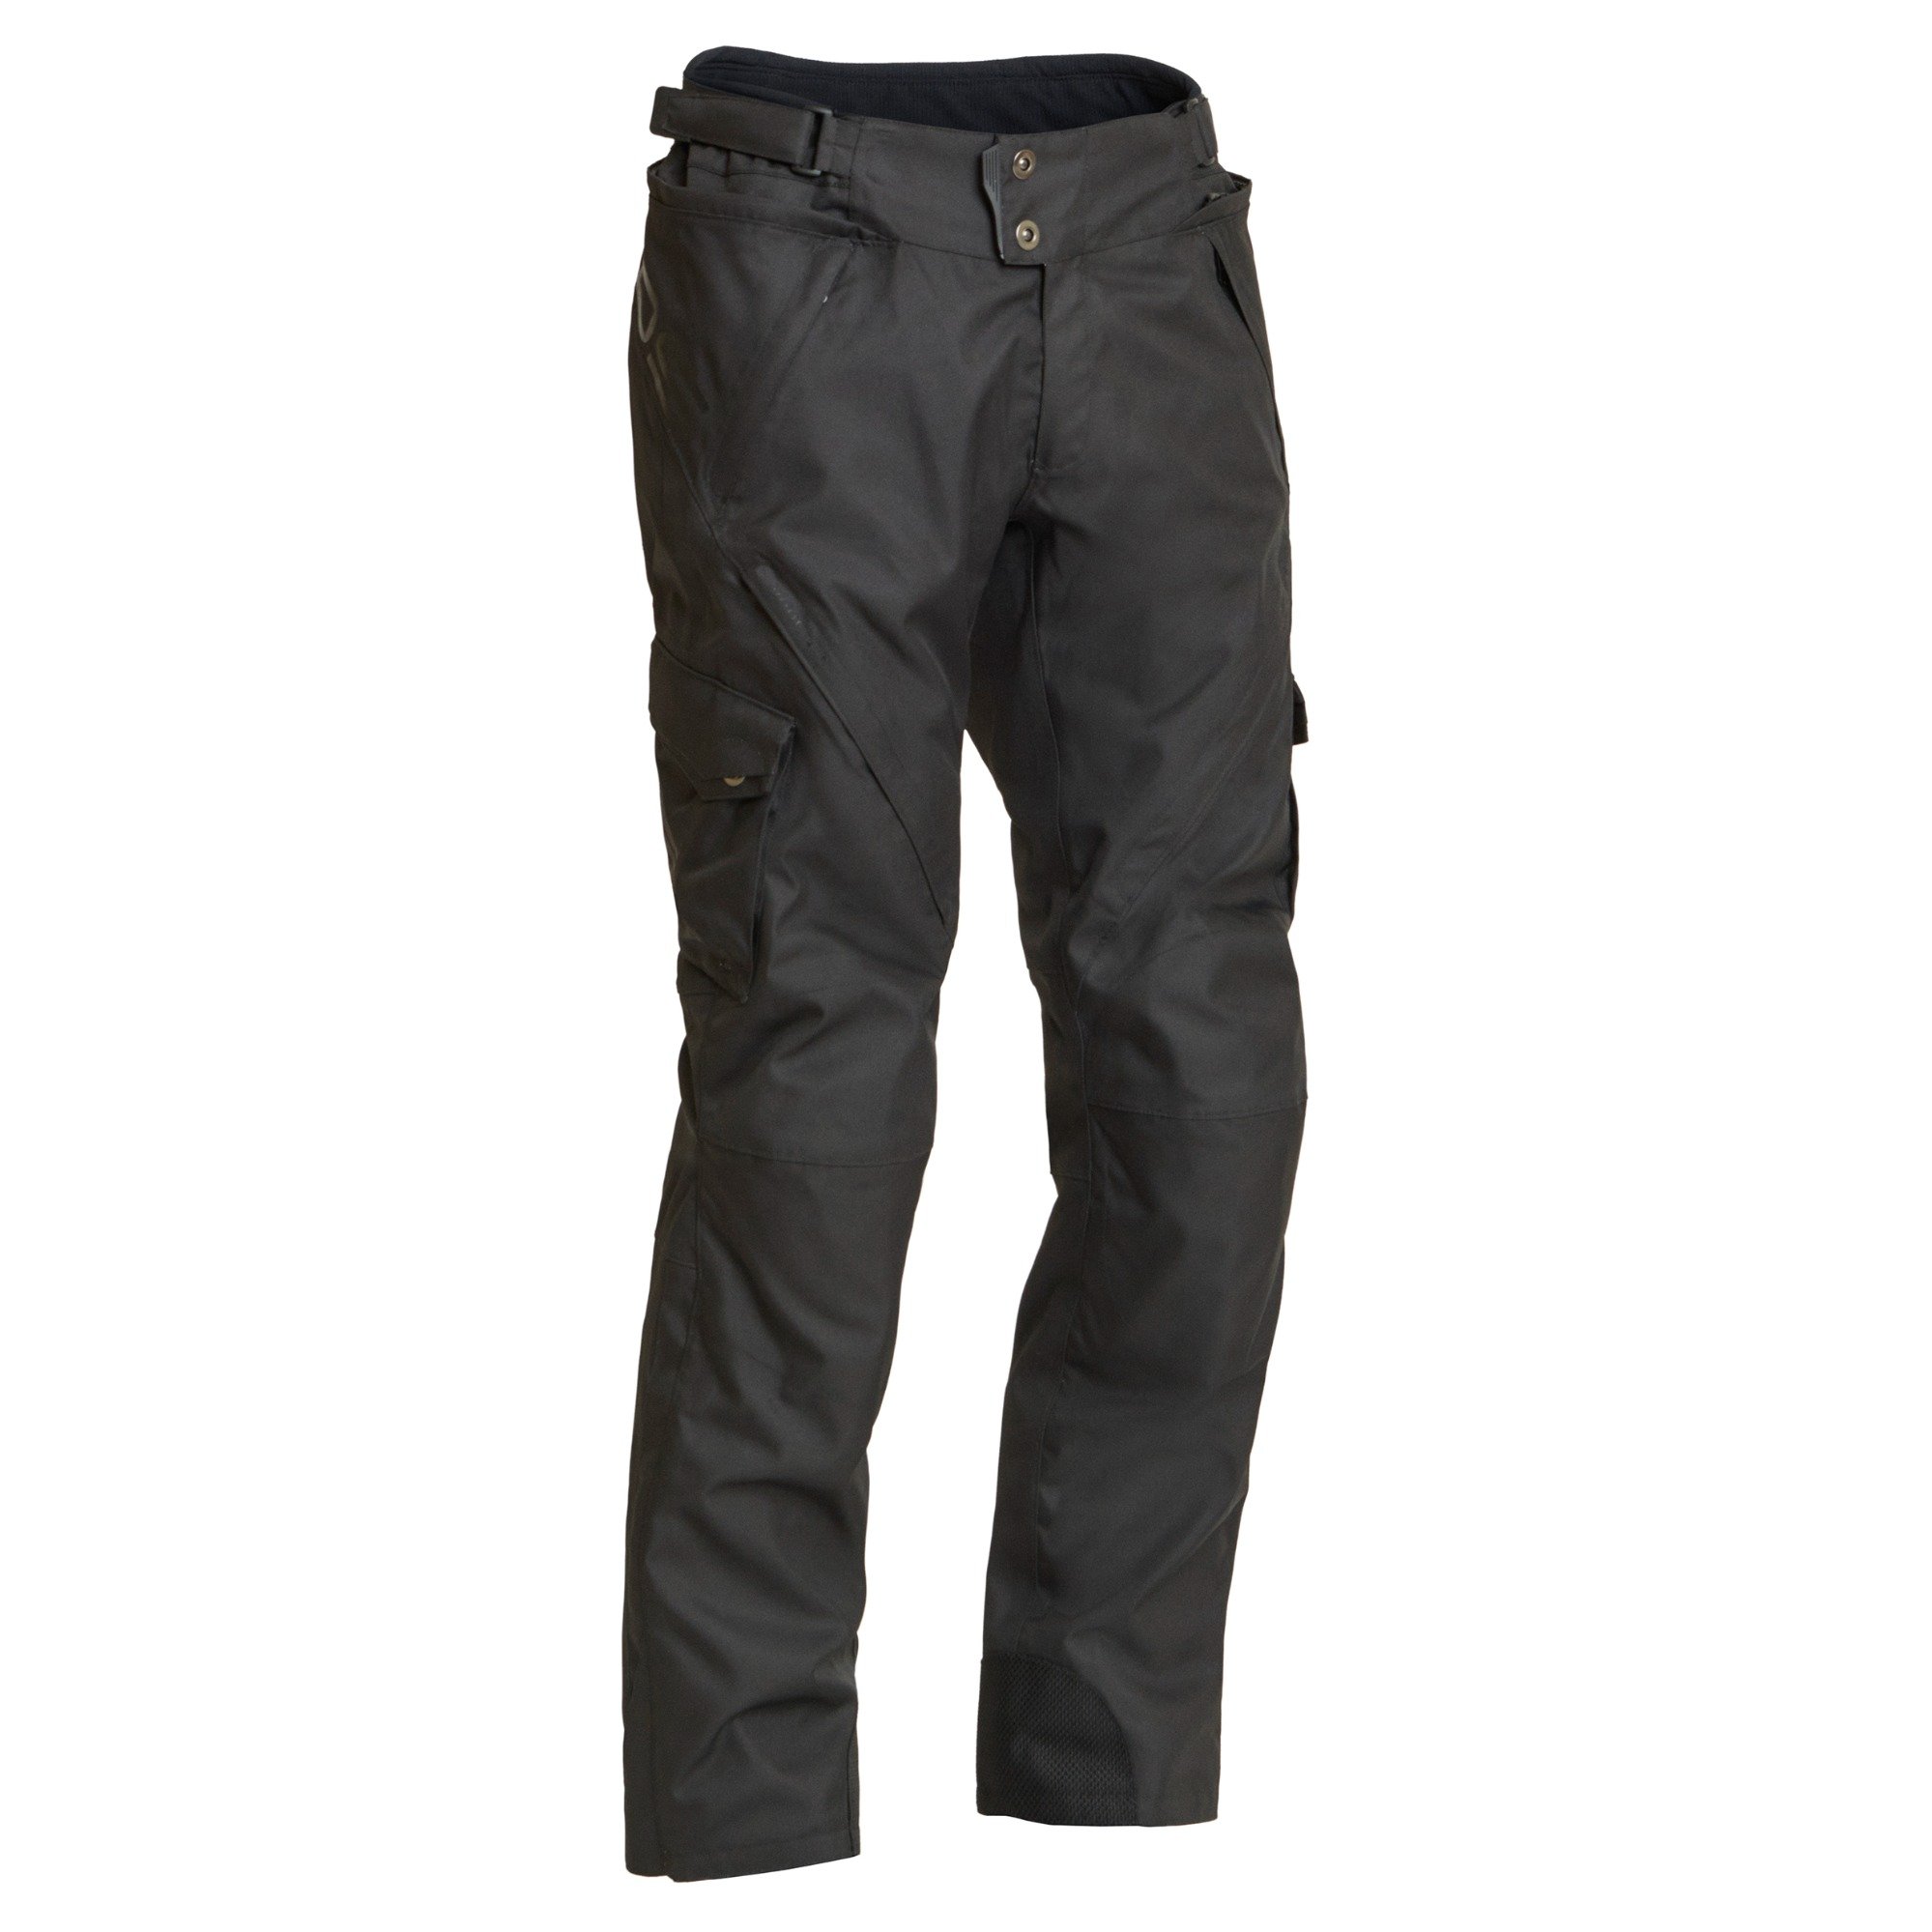 Image of Lindstrands Berga Black Textile Pants Size 56 EN